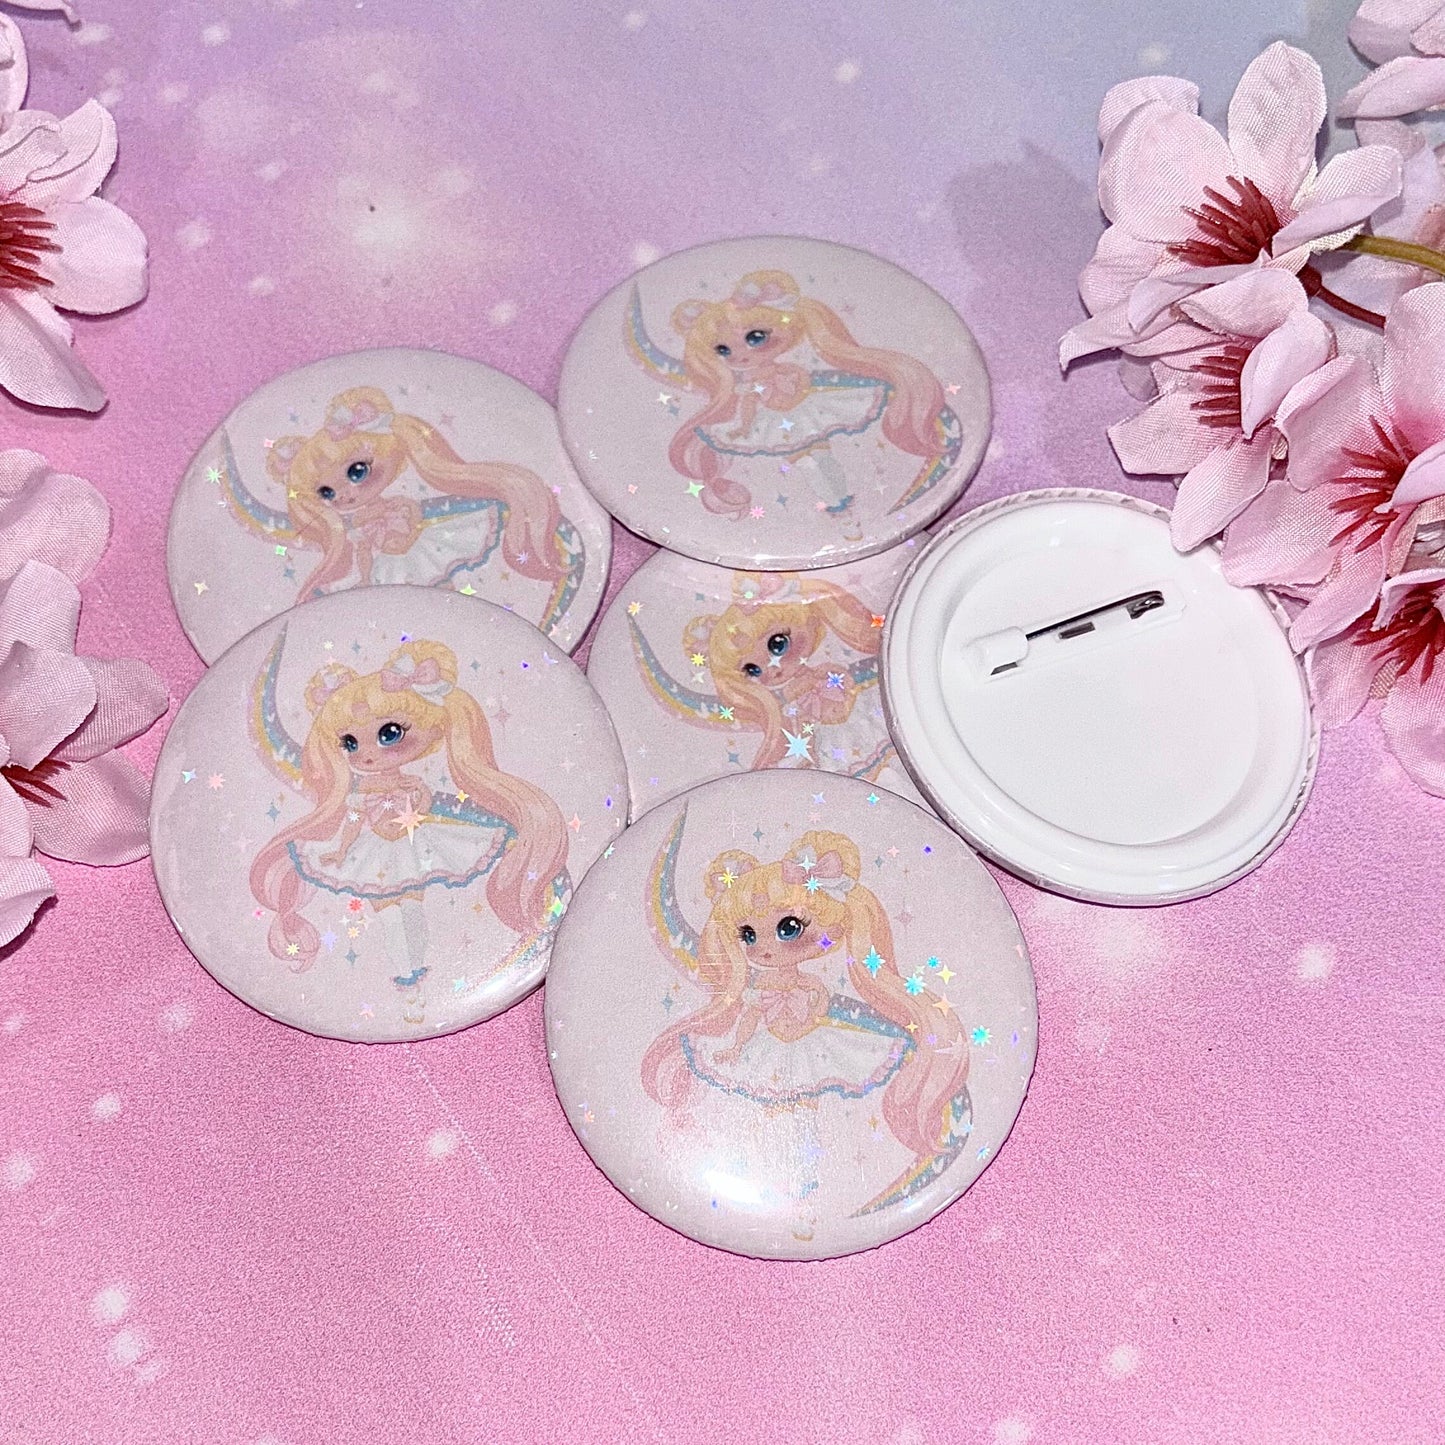 Magical Princess Button Pin | cute button pins, cute pins, Kawaii pins, Kawaii, magical girls, magical girl pins